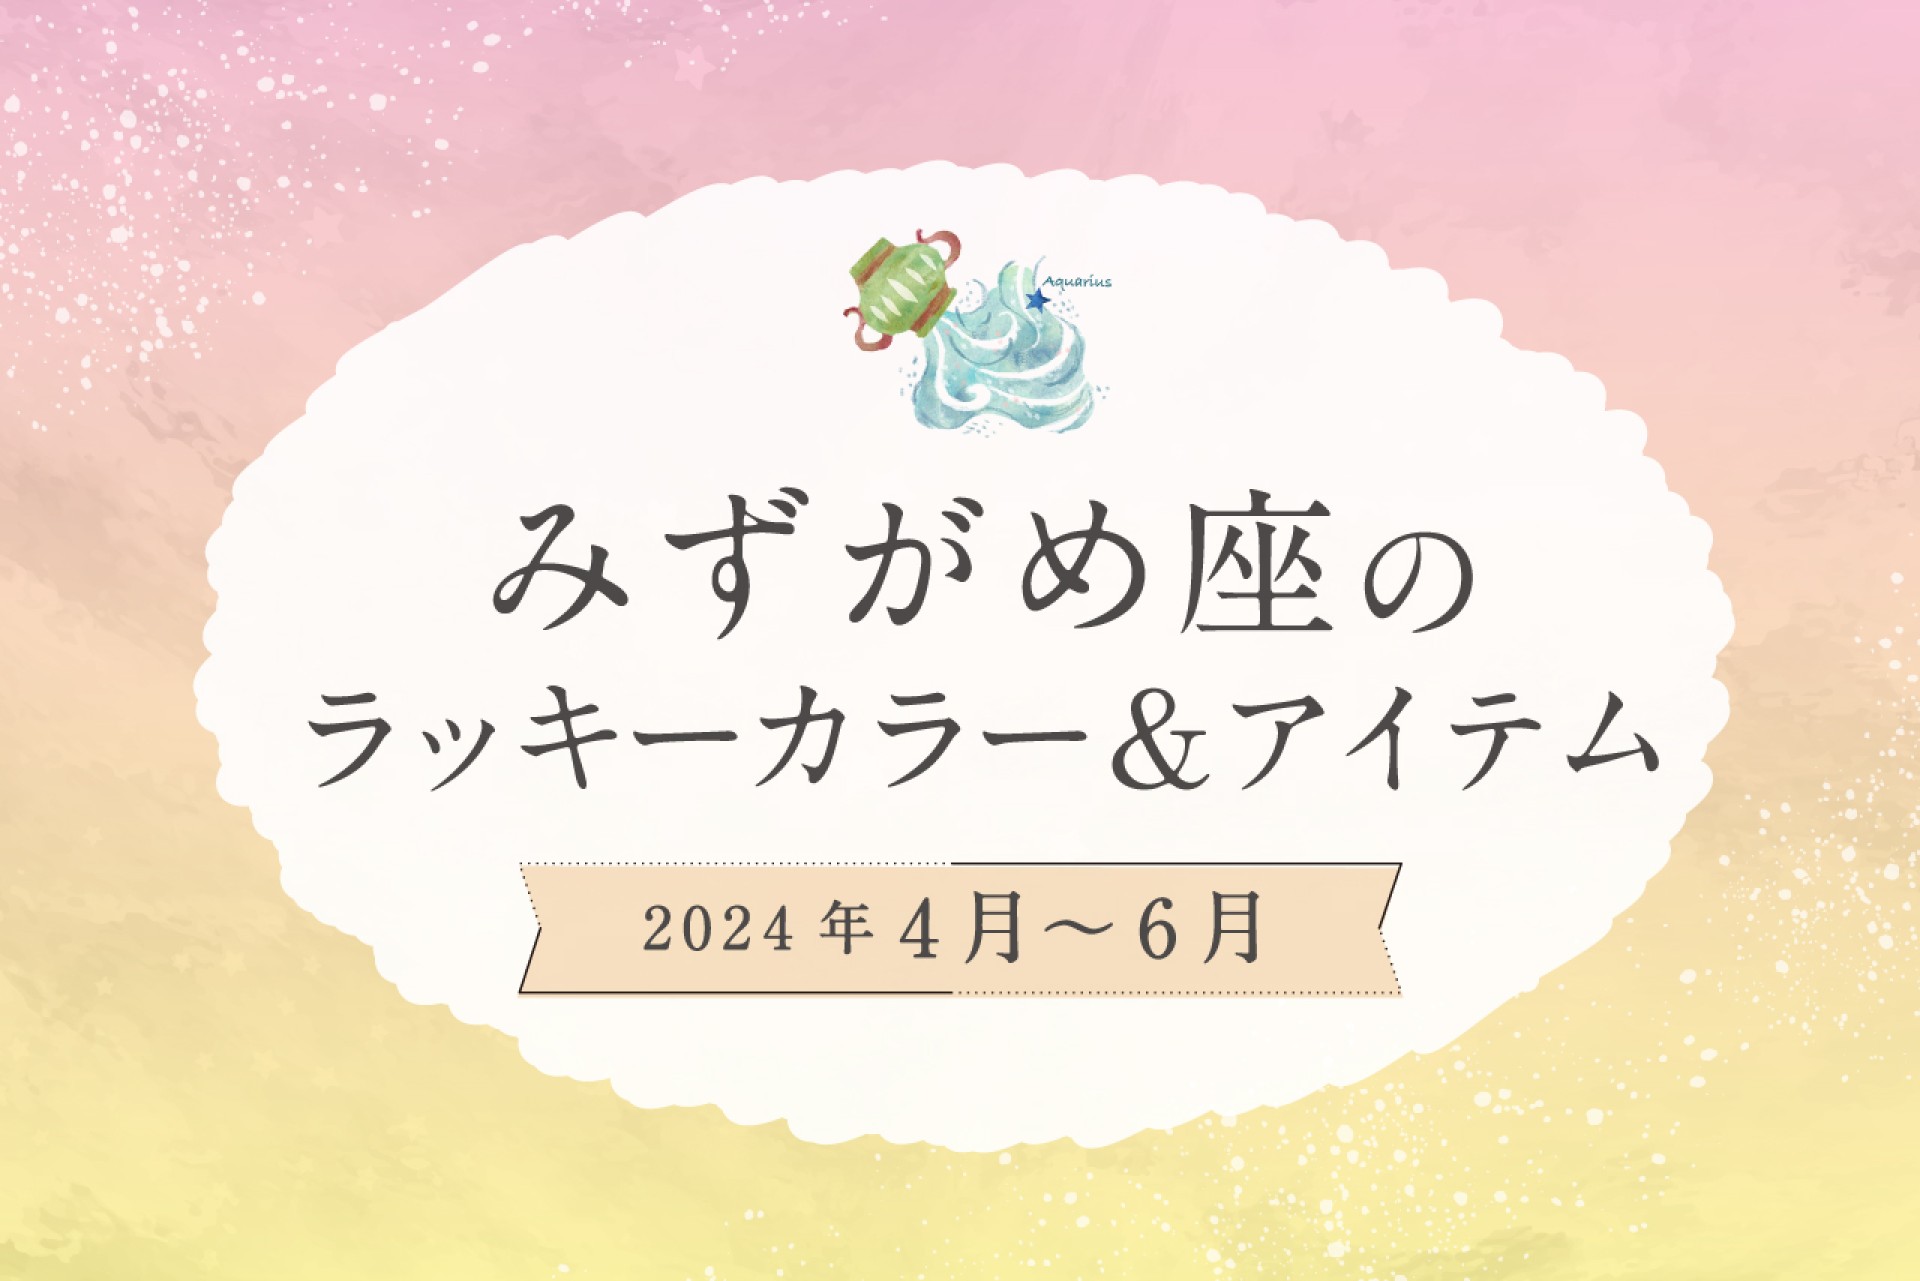 みずがめ座のラッキーカラーとラッキーアイテム【2024年4月・5月・6月】